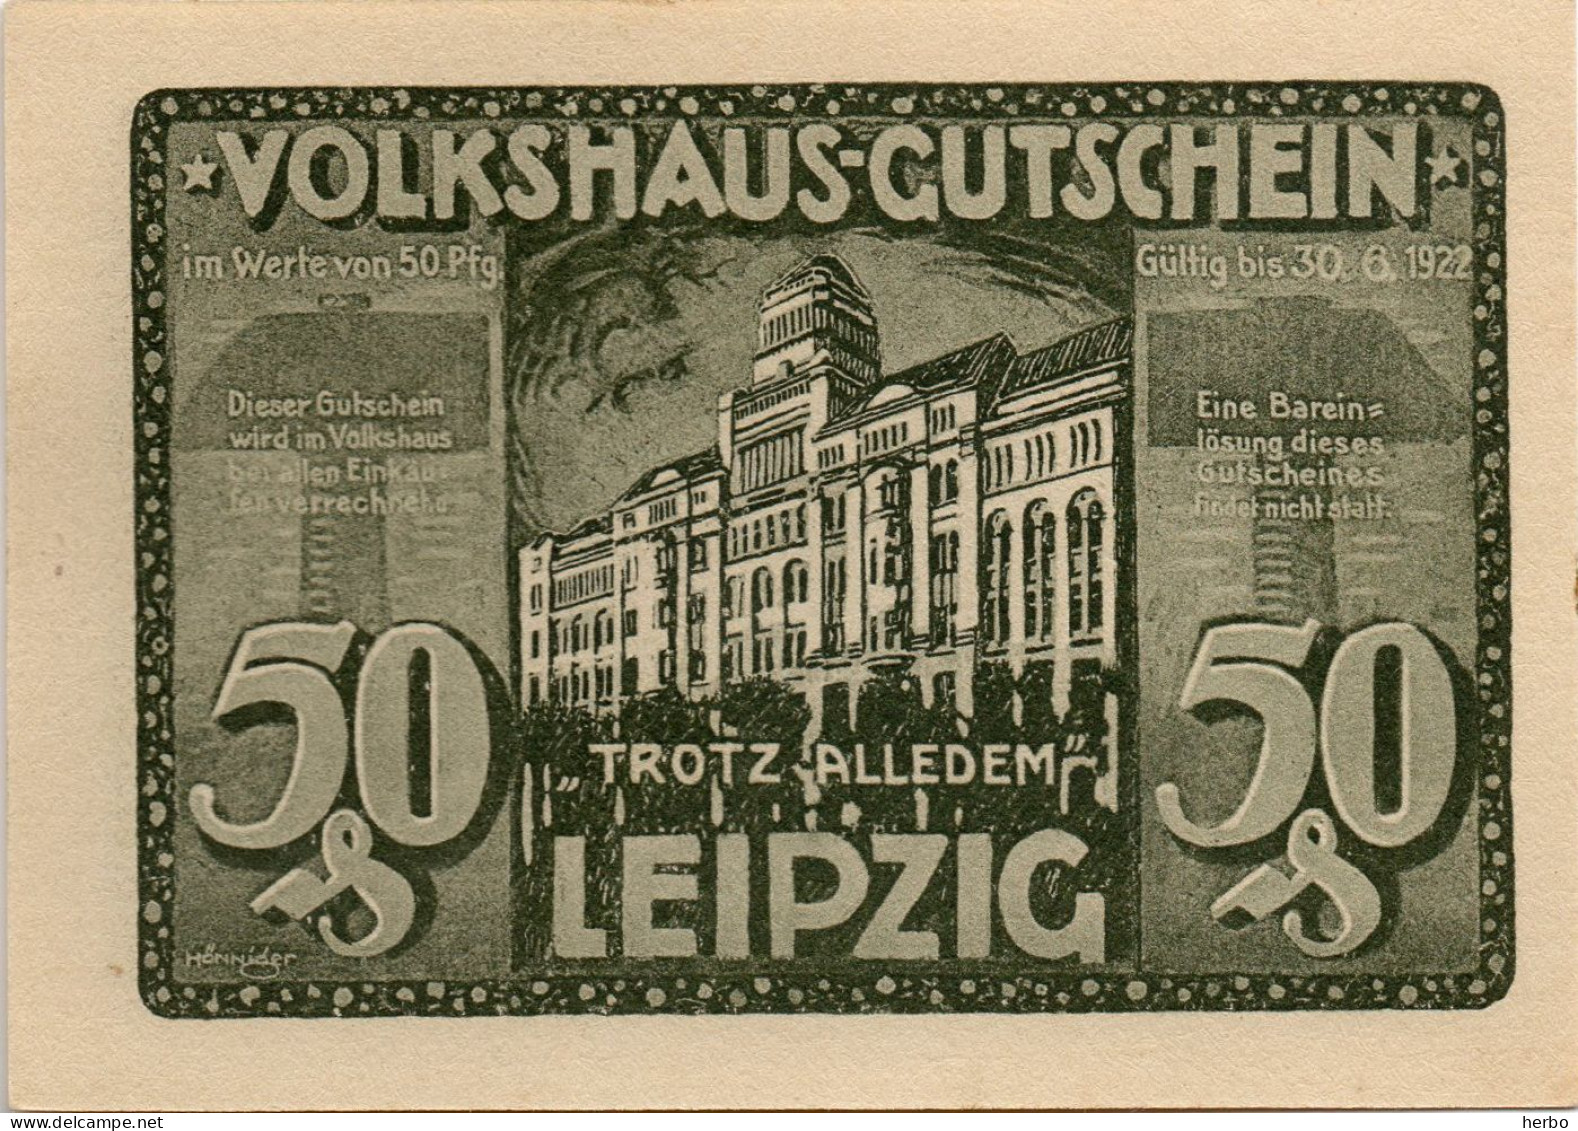 Bons de nécessité Allemand 50 Pfennig, République de Weimar. Ville de LEIPZIG. Gutschein. 12 bons différents NEUFS.